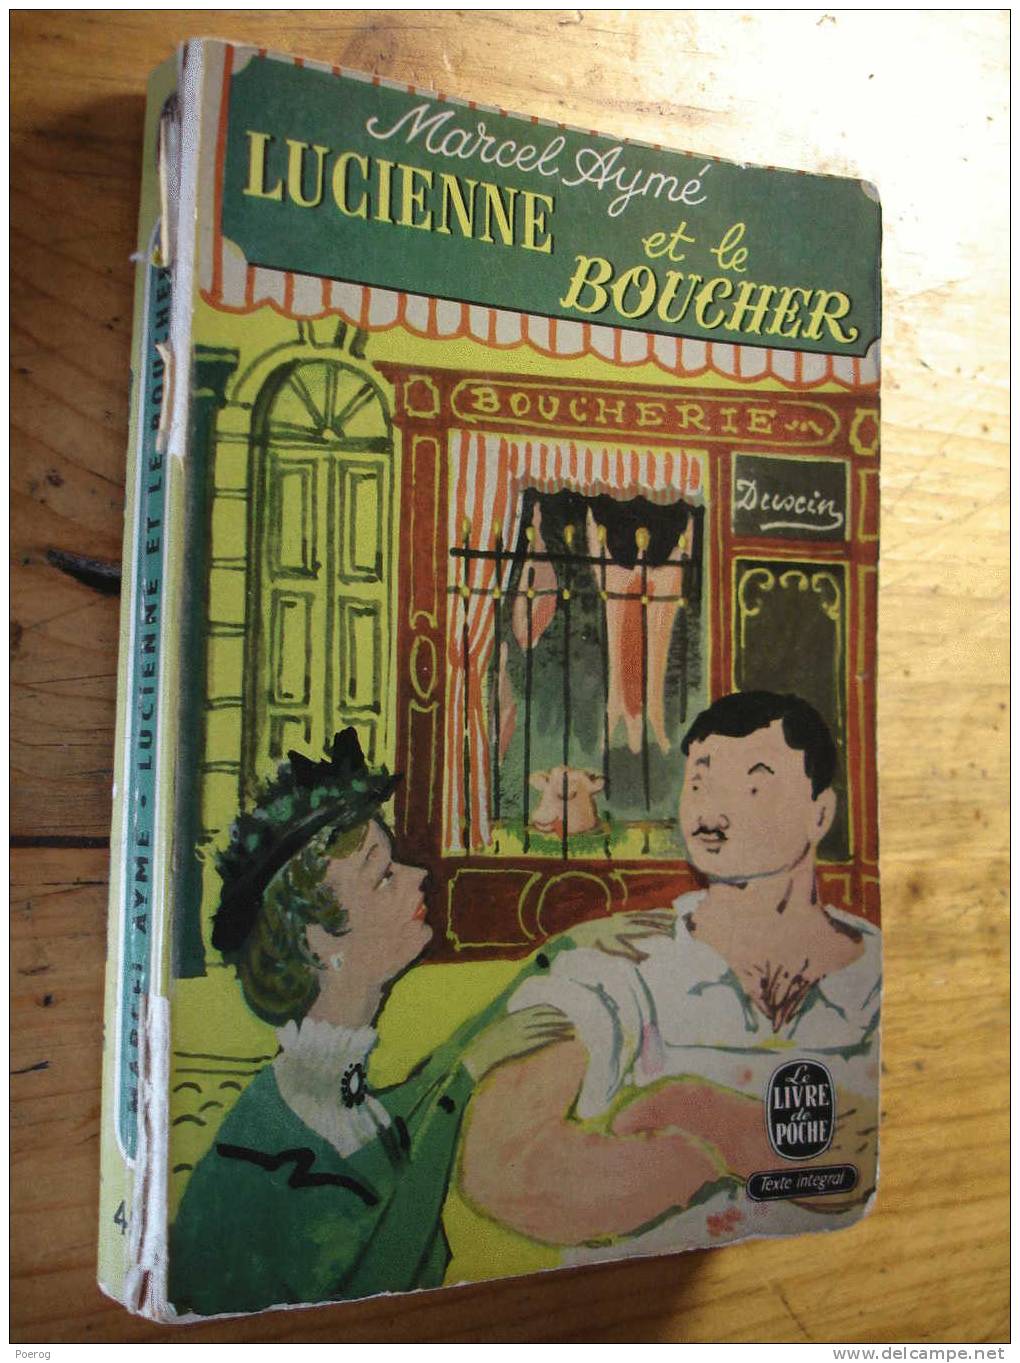 MARCEL AYME - LUCIENNE ET LE BOUCHER - LE LIVRE DE POCHE N°451- 1964 - Französische Autoren